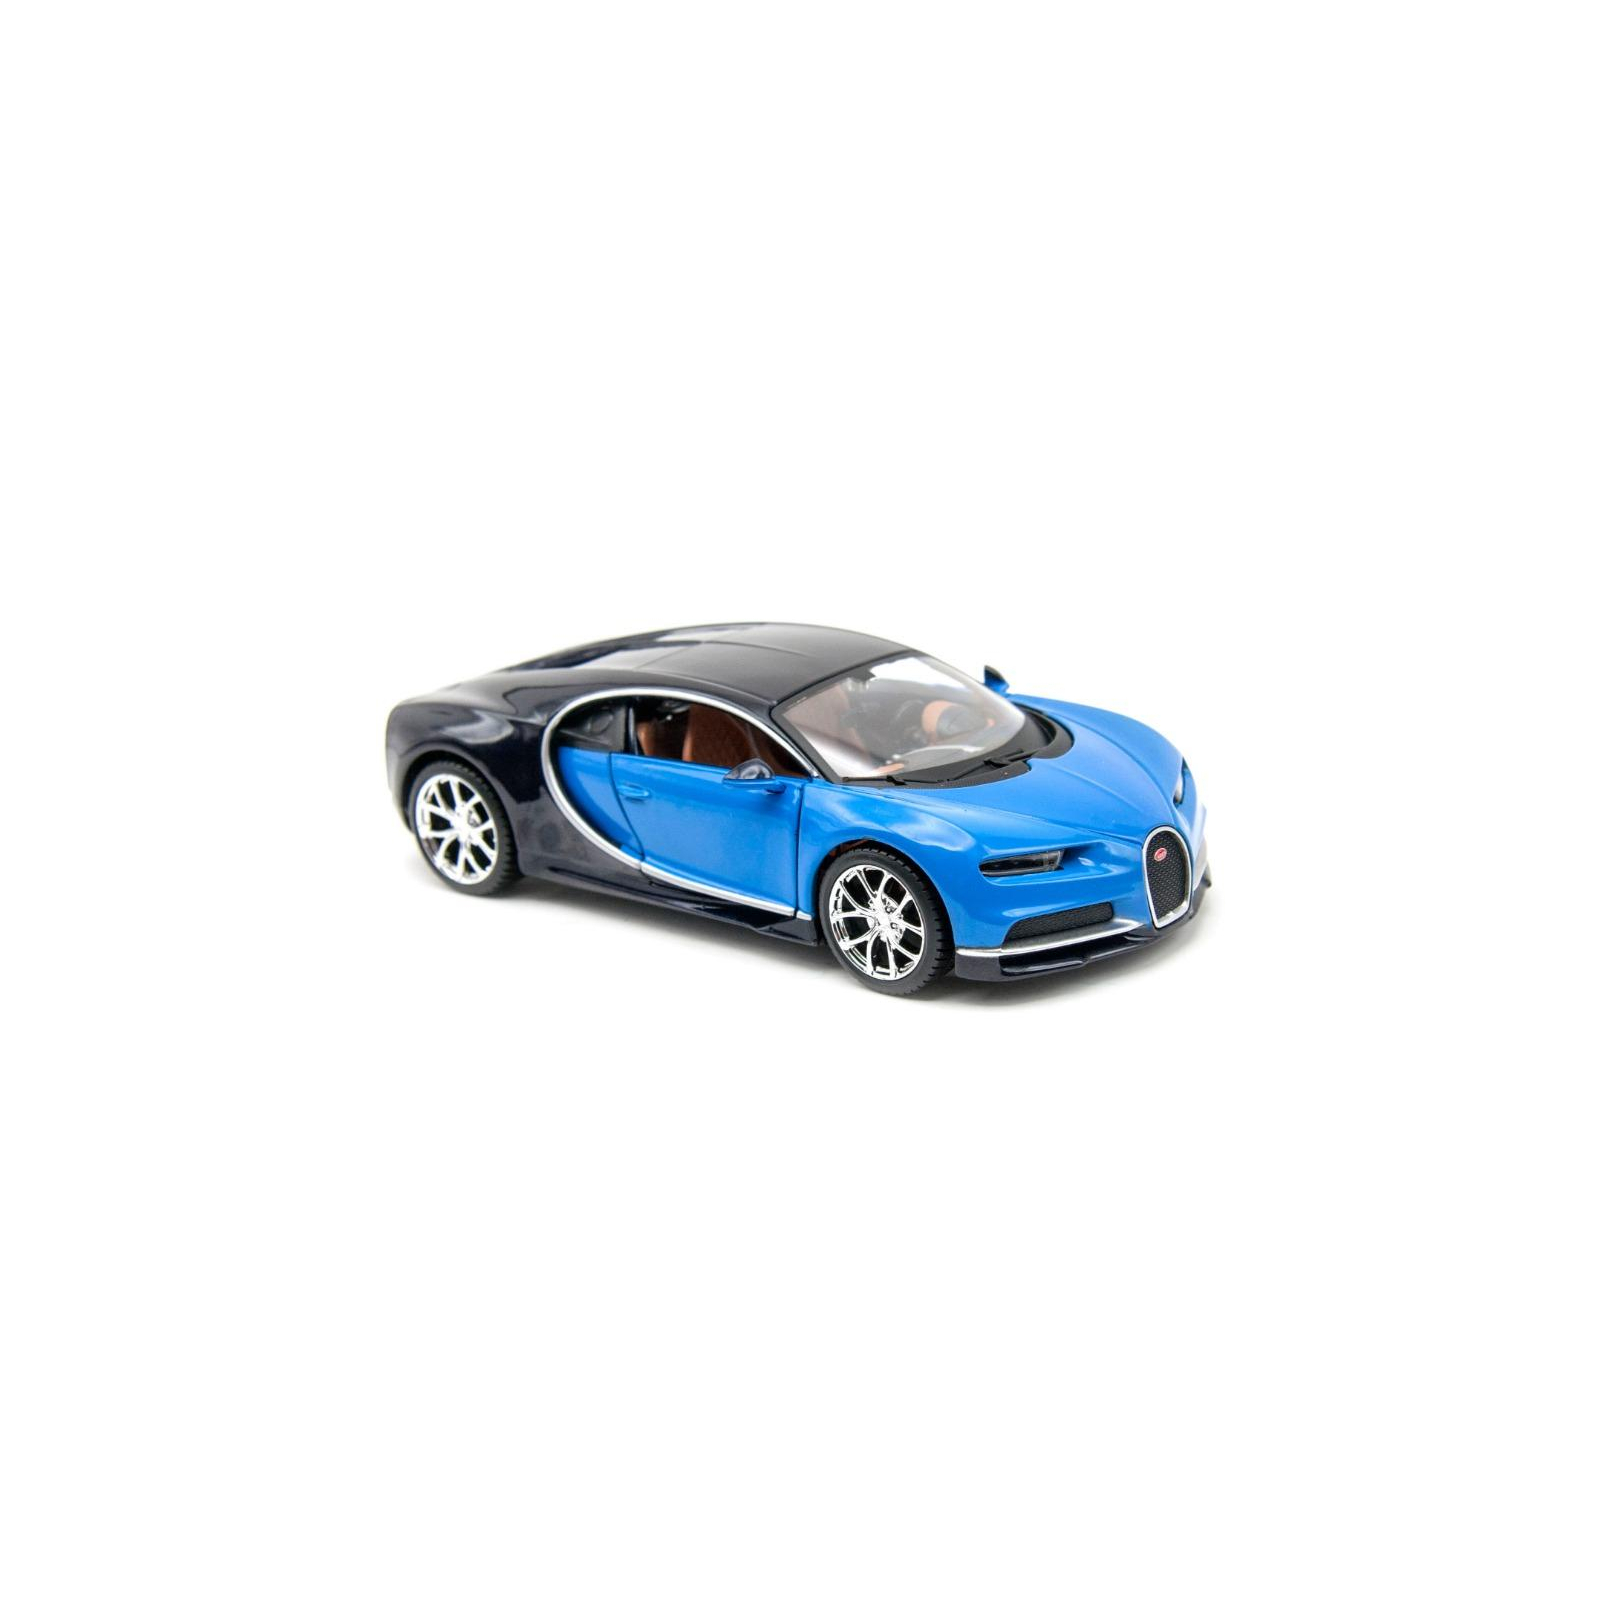 Машина Maisto Bugatti Chiron (1:24) синий металлик (31514 met. blue)